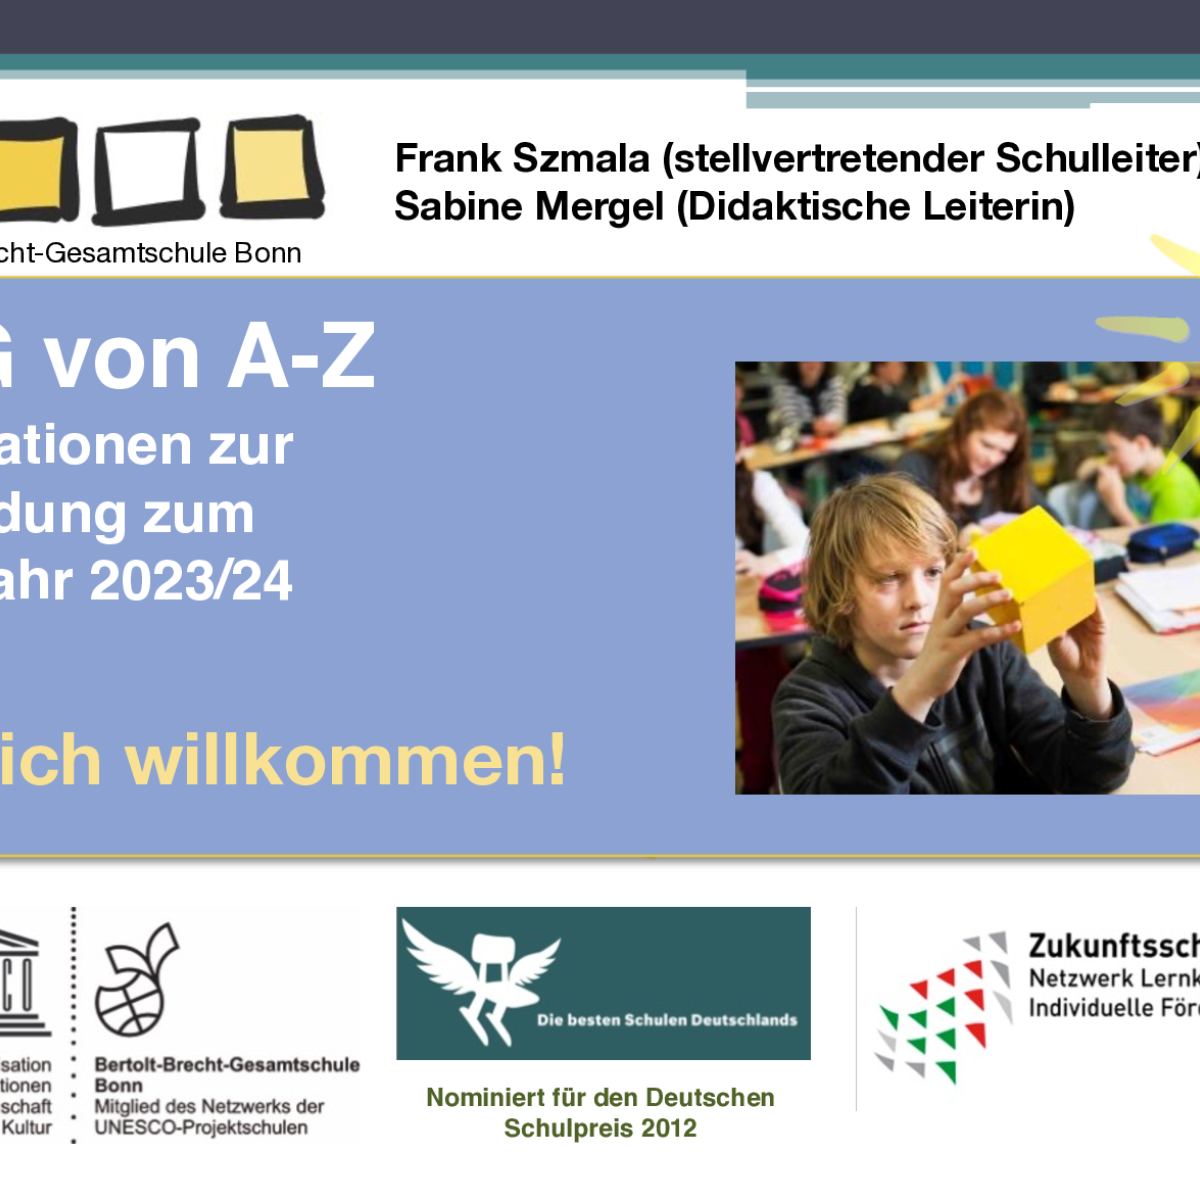 Informationsabend zur Anmeldung zum Schuljahr 2023/2024: BBG von A-Z